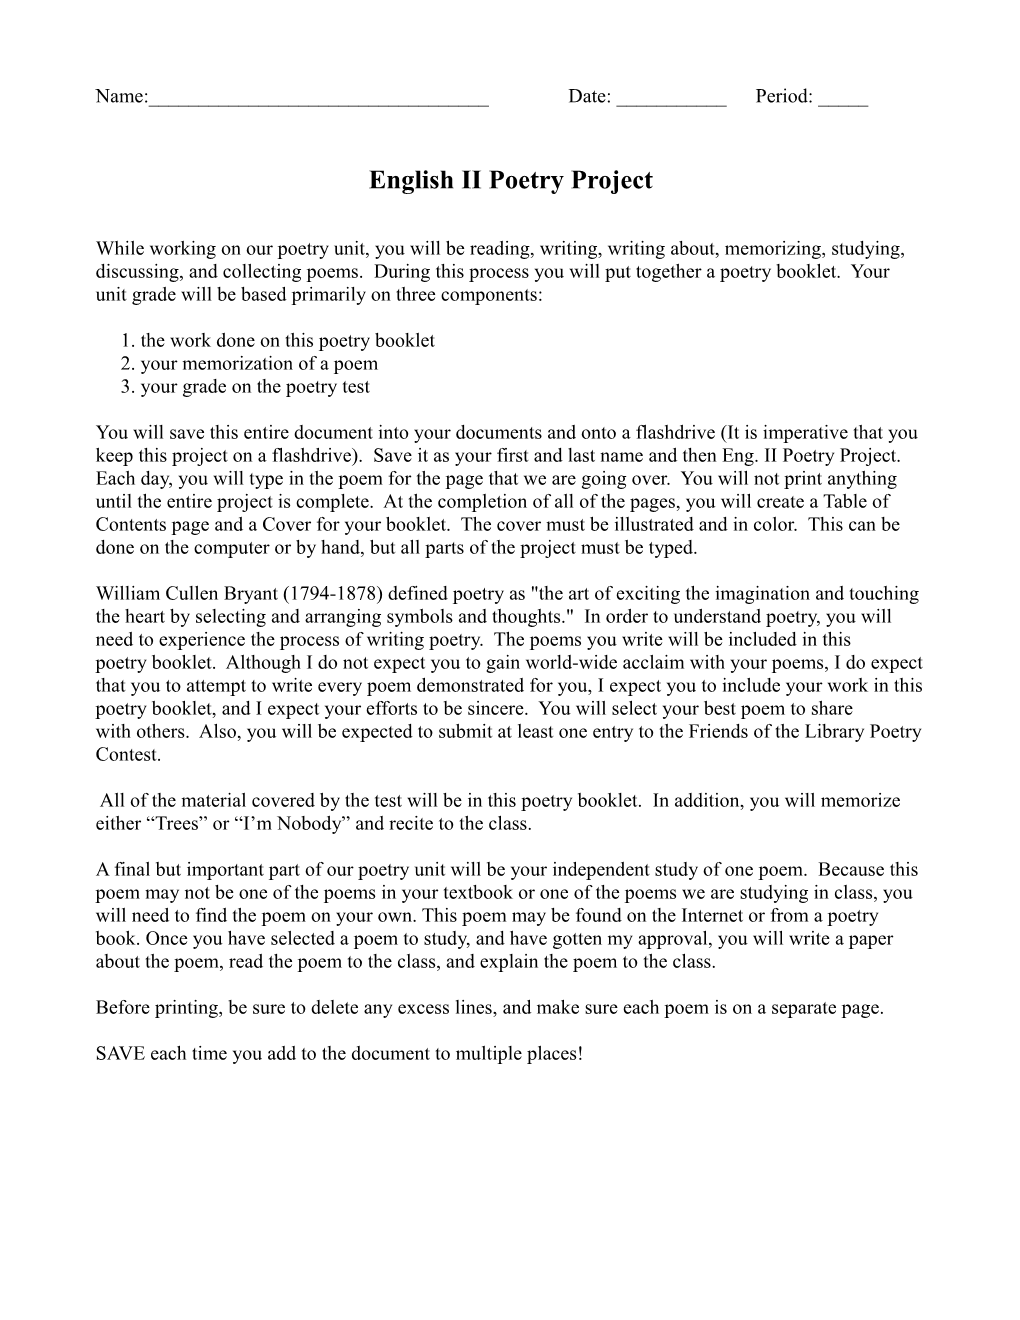 English II Poetry Project